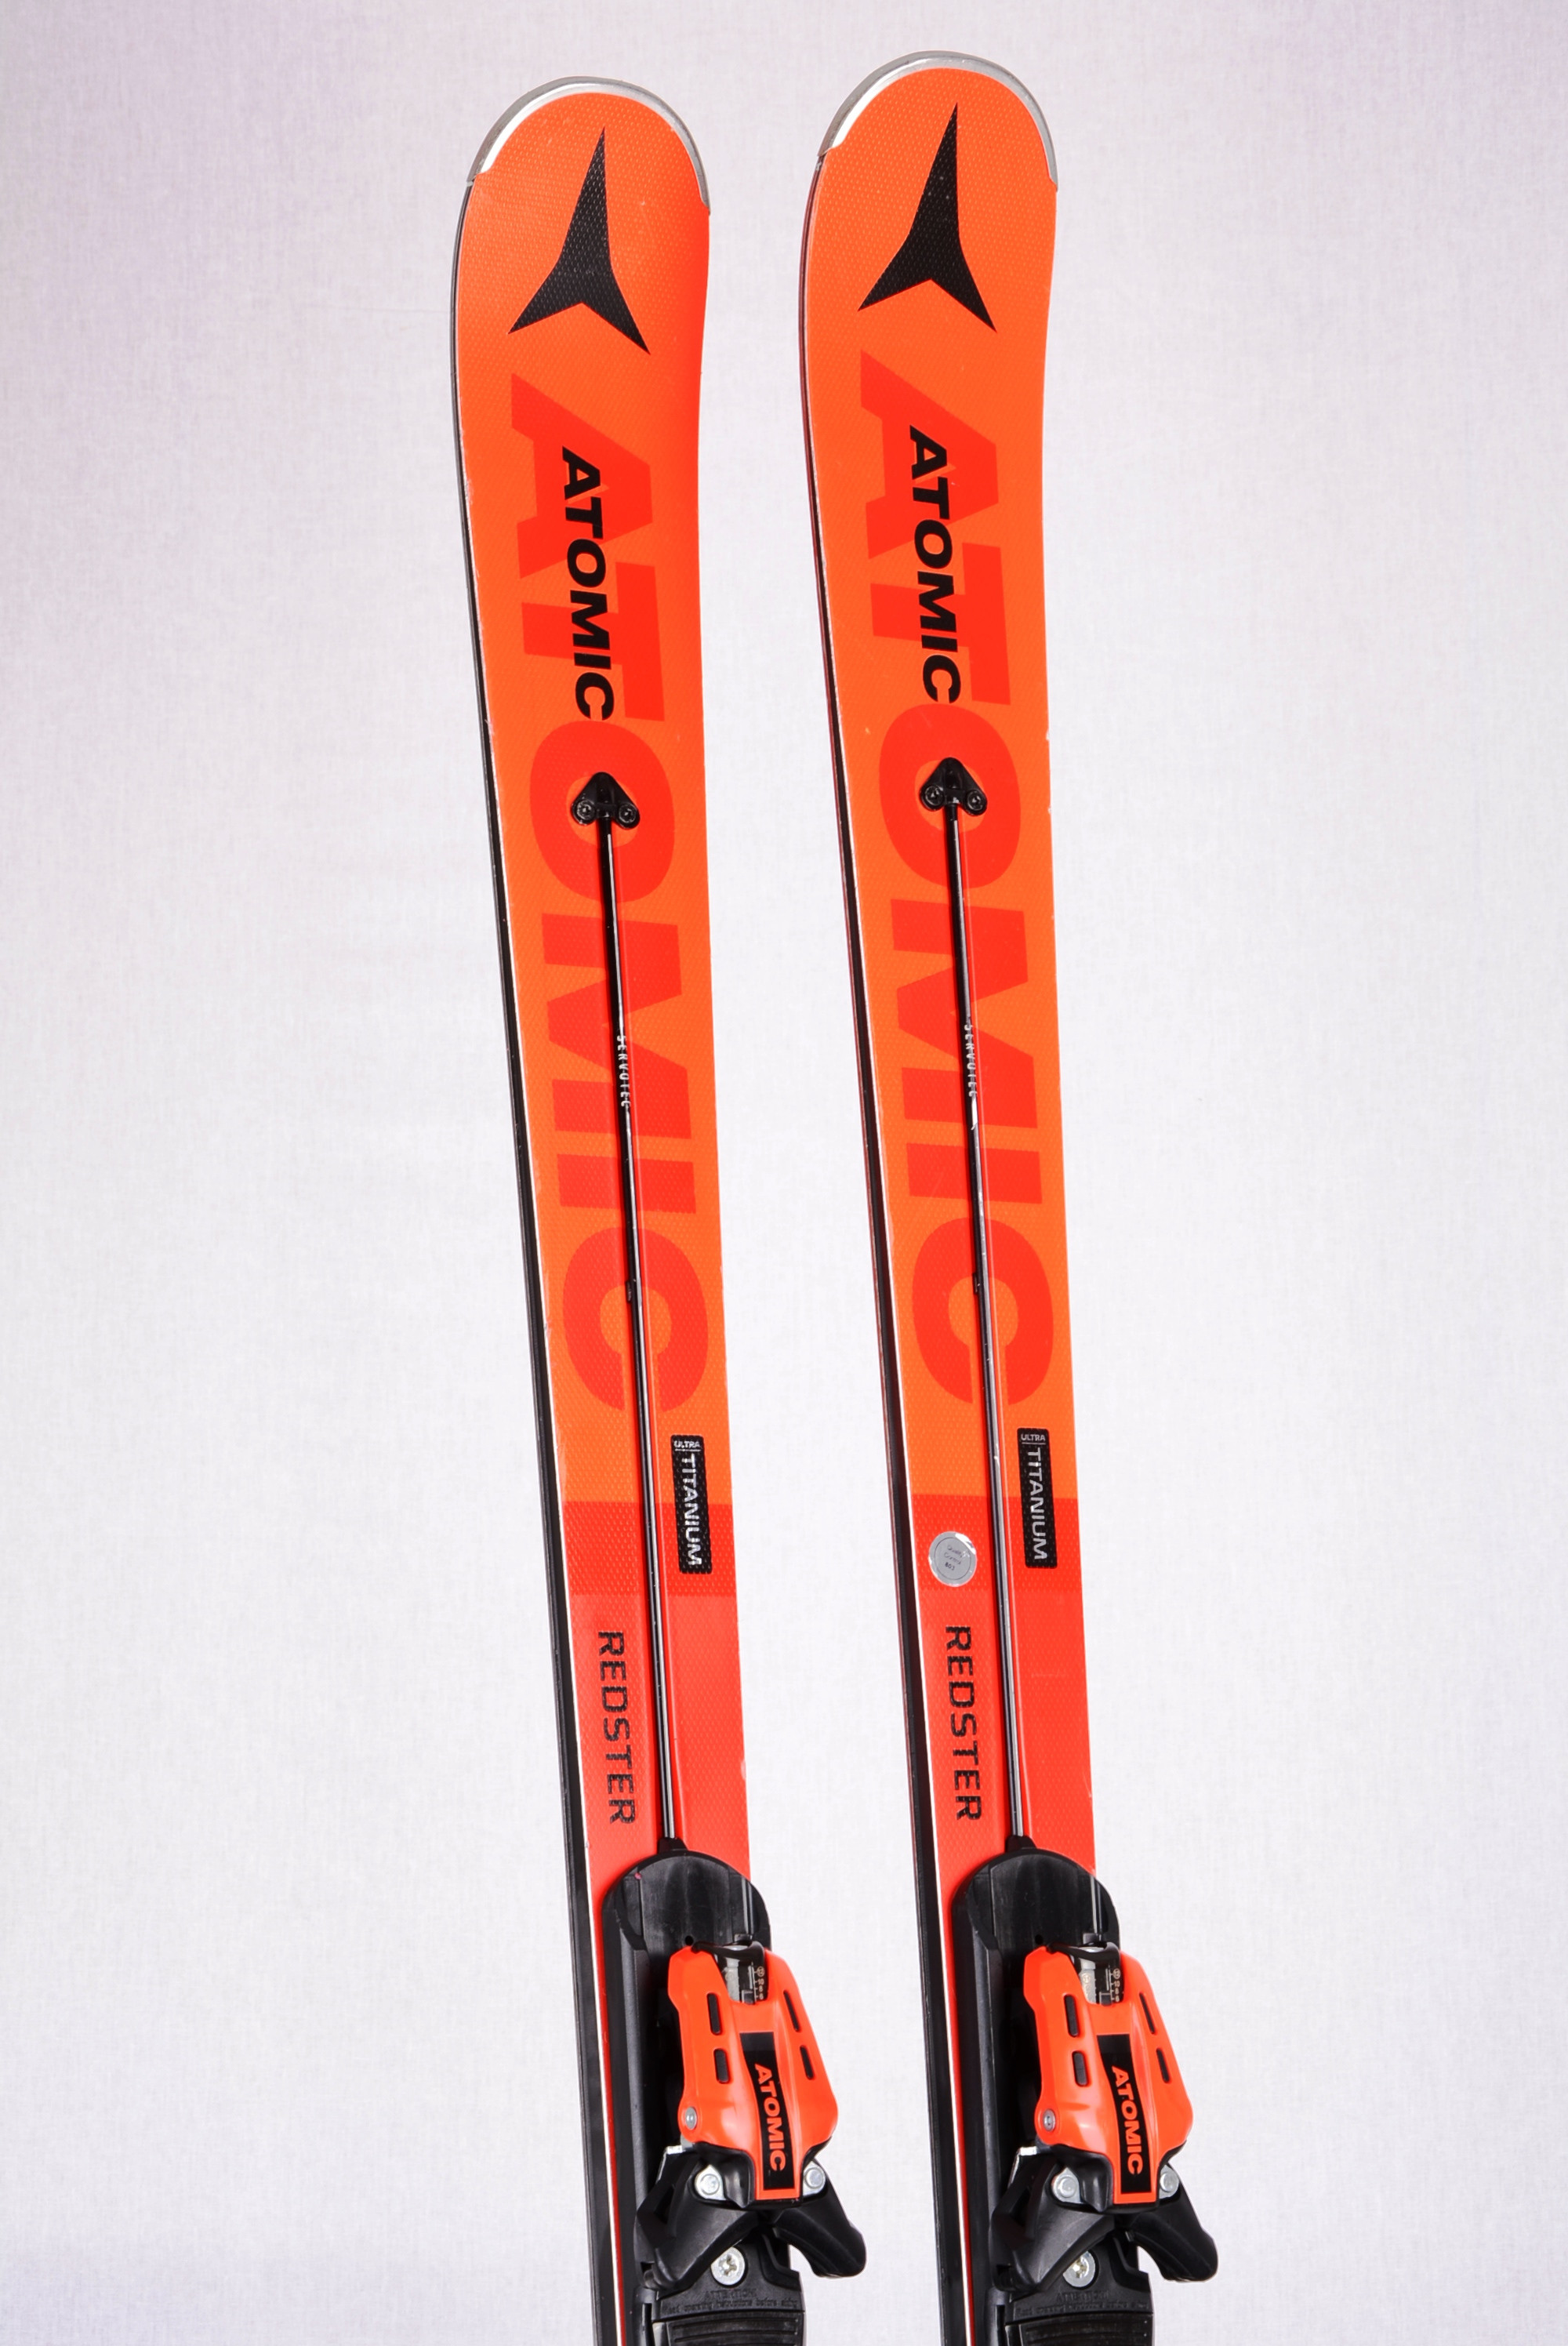 skis ATOMIC REDSTER G9 SERVOTEC 2020, POWER woodcore, grip walk